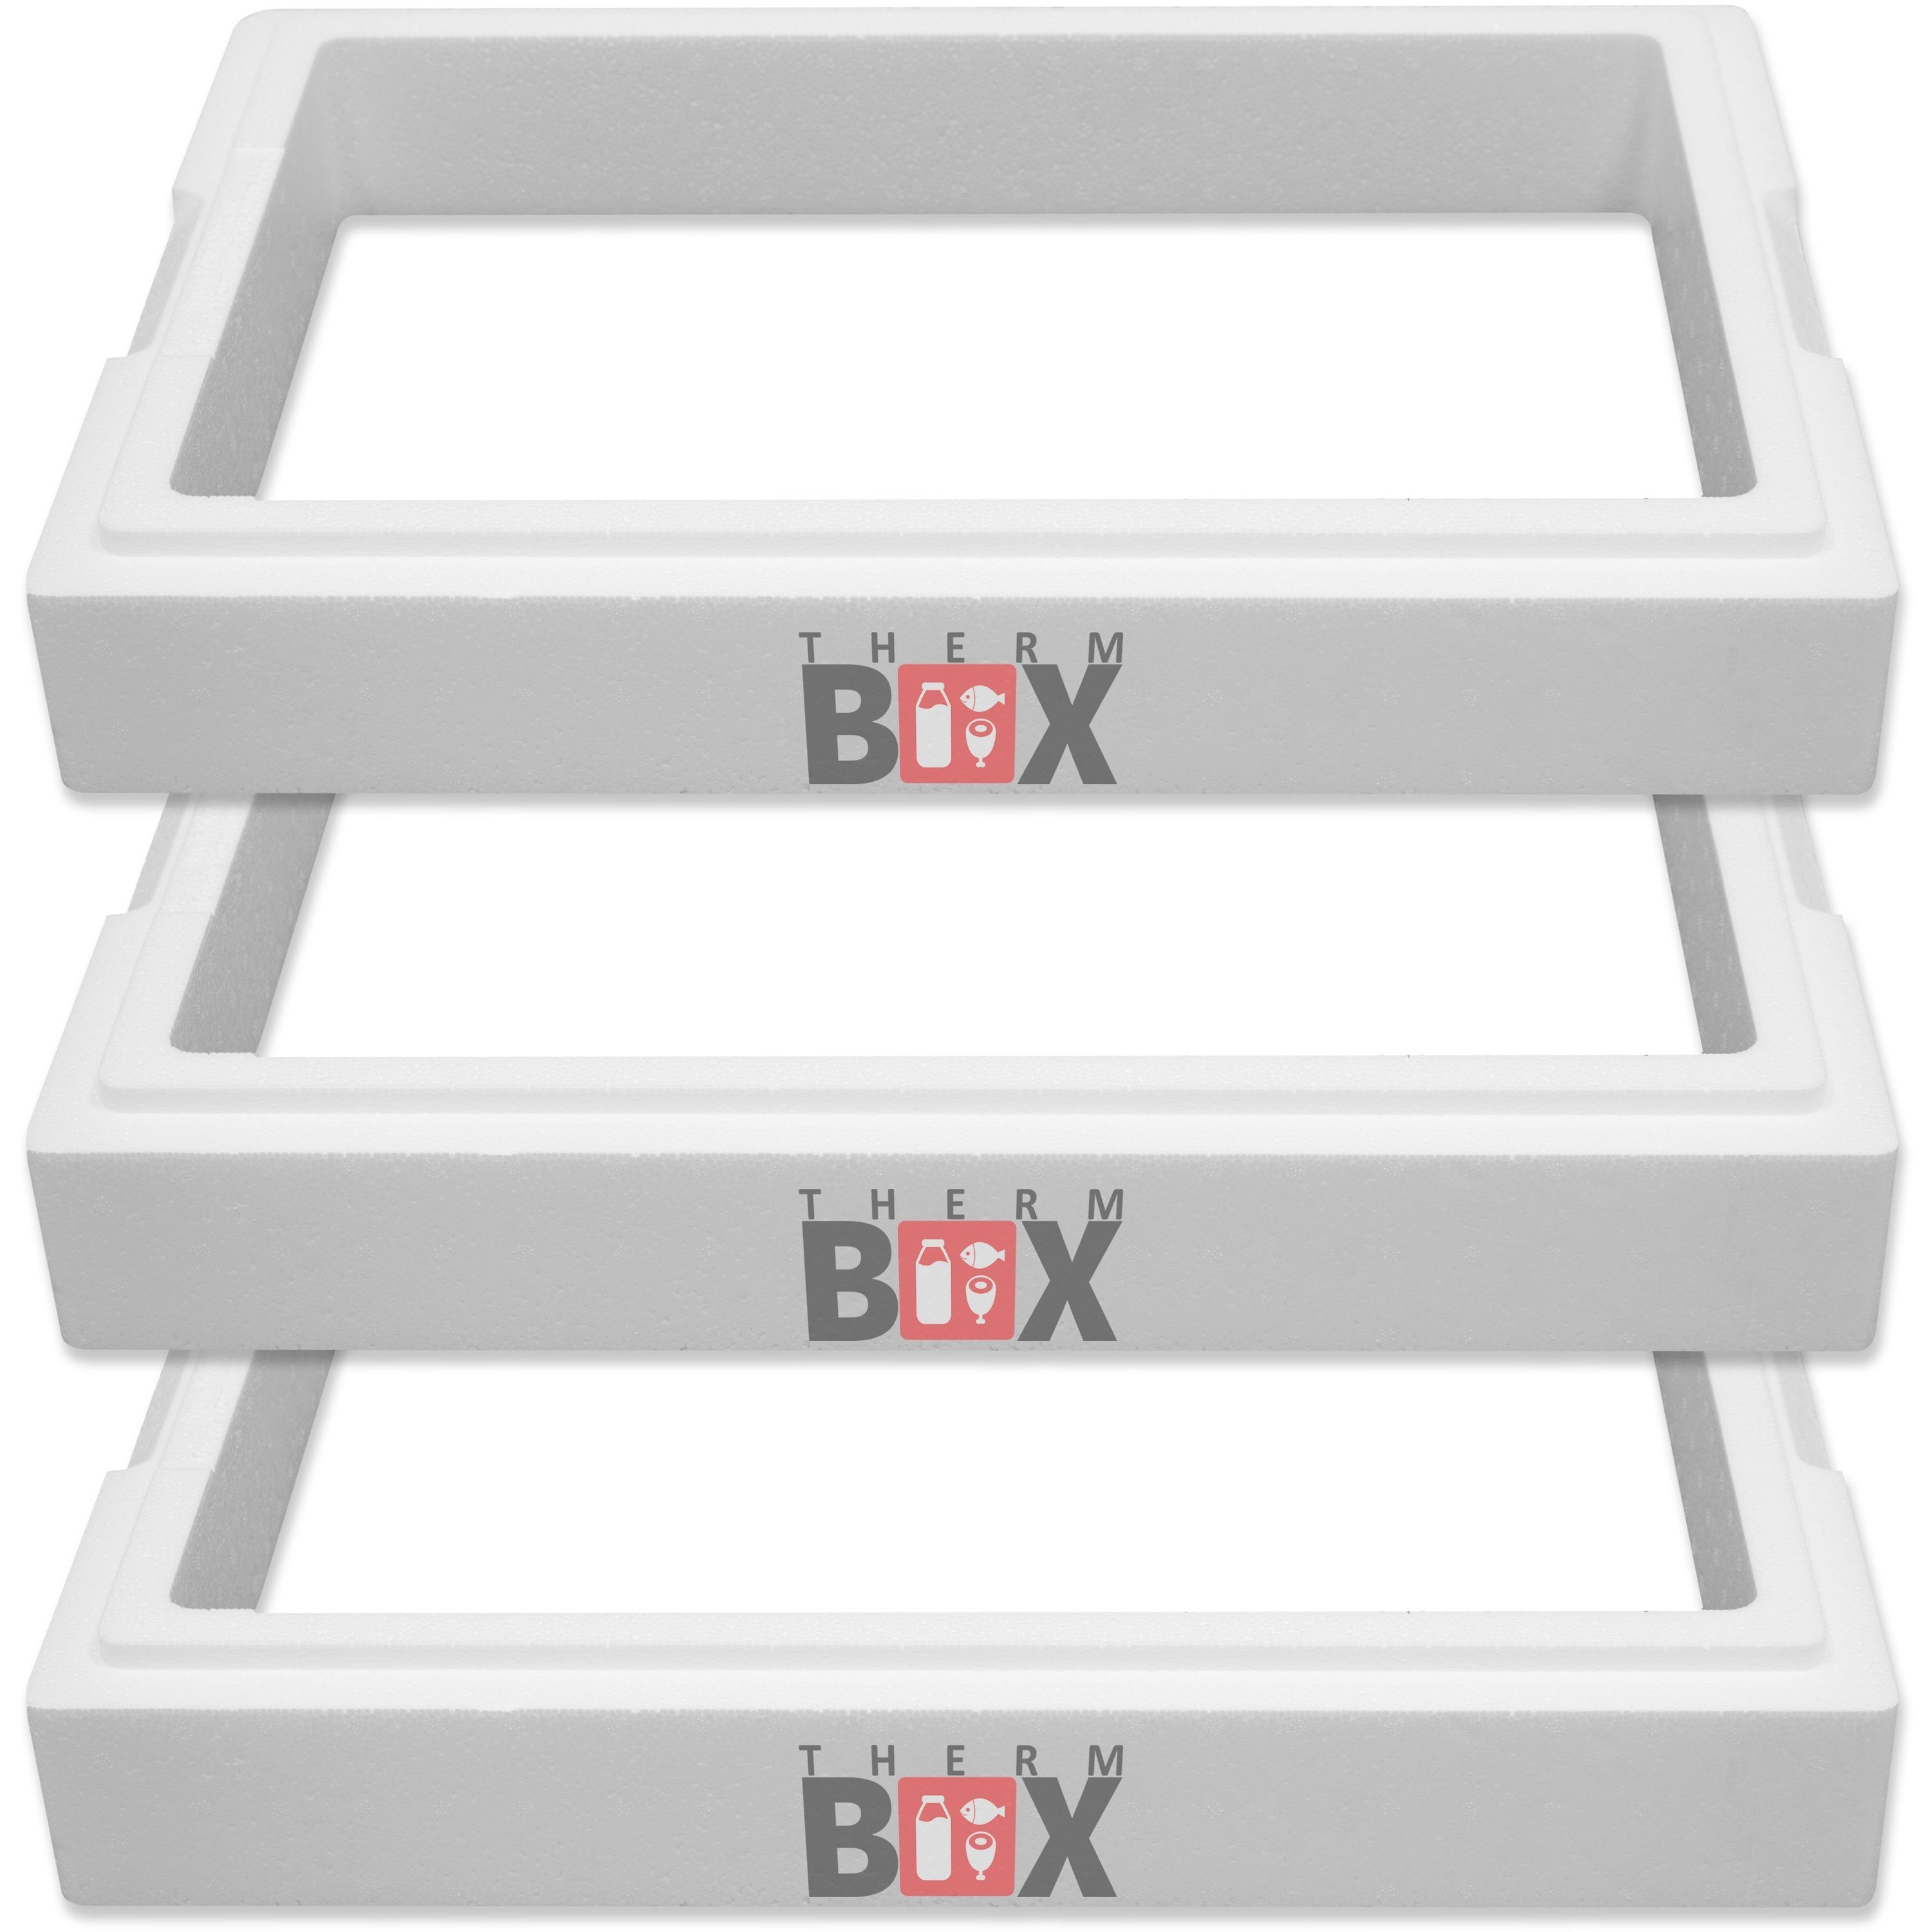 THERM-BOX Thermobehälter Modular 3x Zusatzring 11M Wand: 4,0 cm 11,9L Innenmaß: 49x30x8cm, Styropor-Verdichtet, (3-tlg., 3 Zusatzringe), Erweiterbar Isolierbox Thermobox Kühlbox Warmhaltebox | Thermobehälter